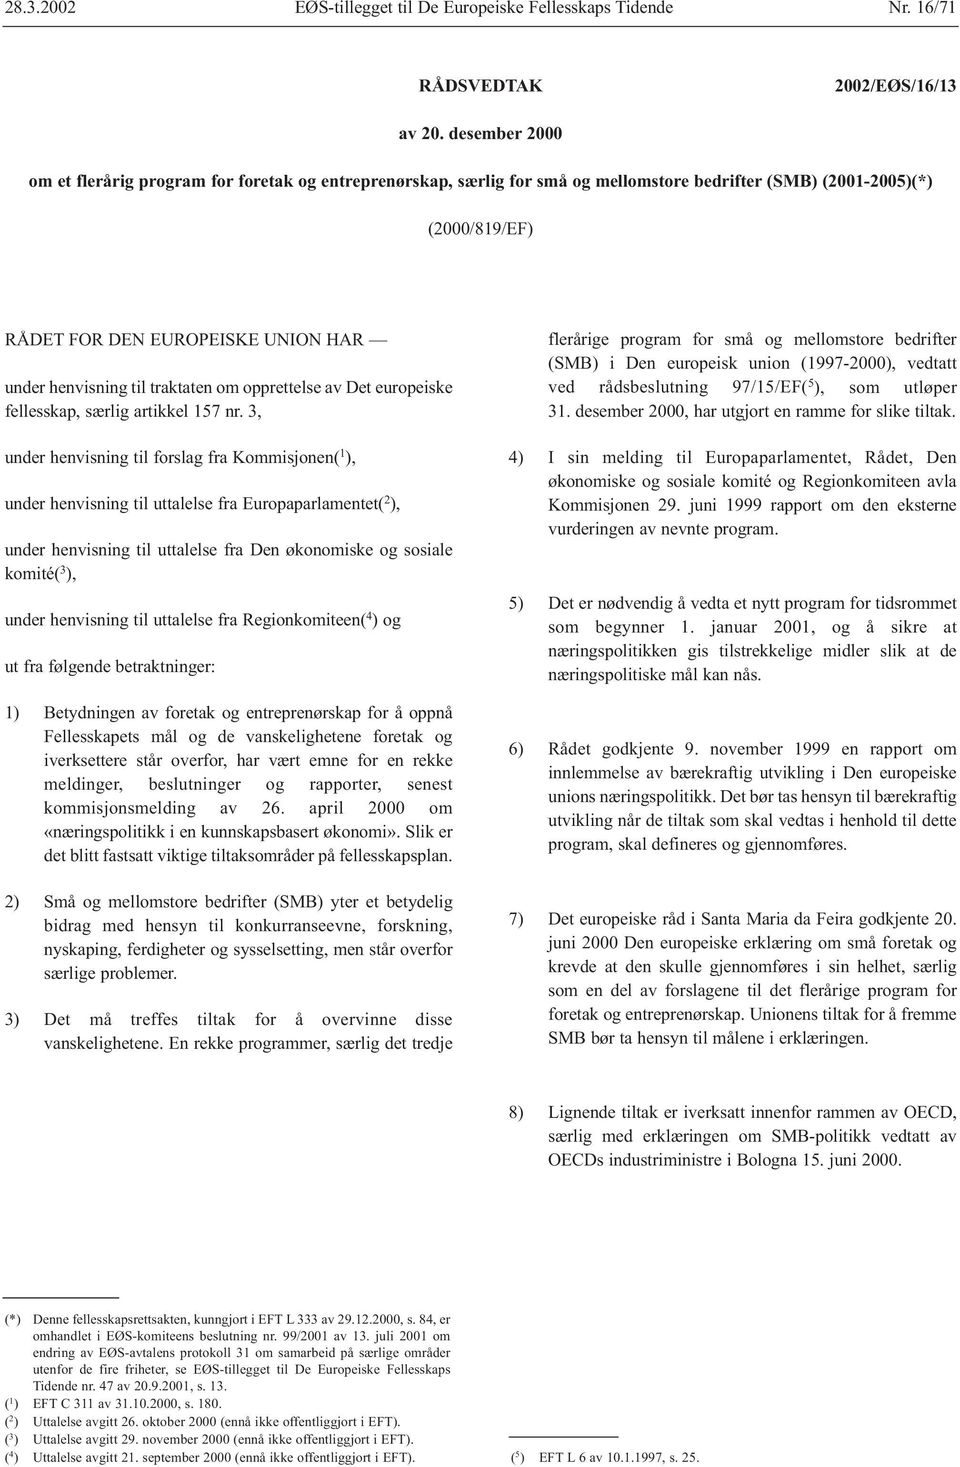 traktaten om opprettelse av Det europeiske fellesskap, særlig artikkel 157 nr.